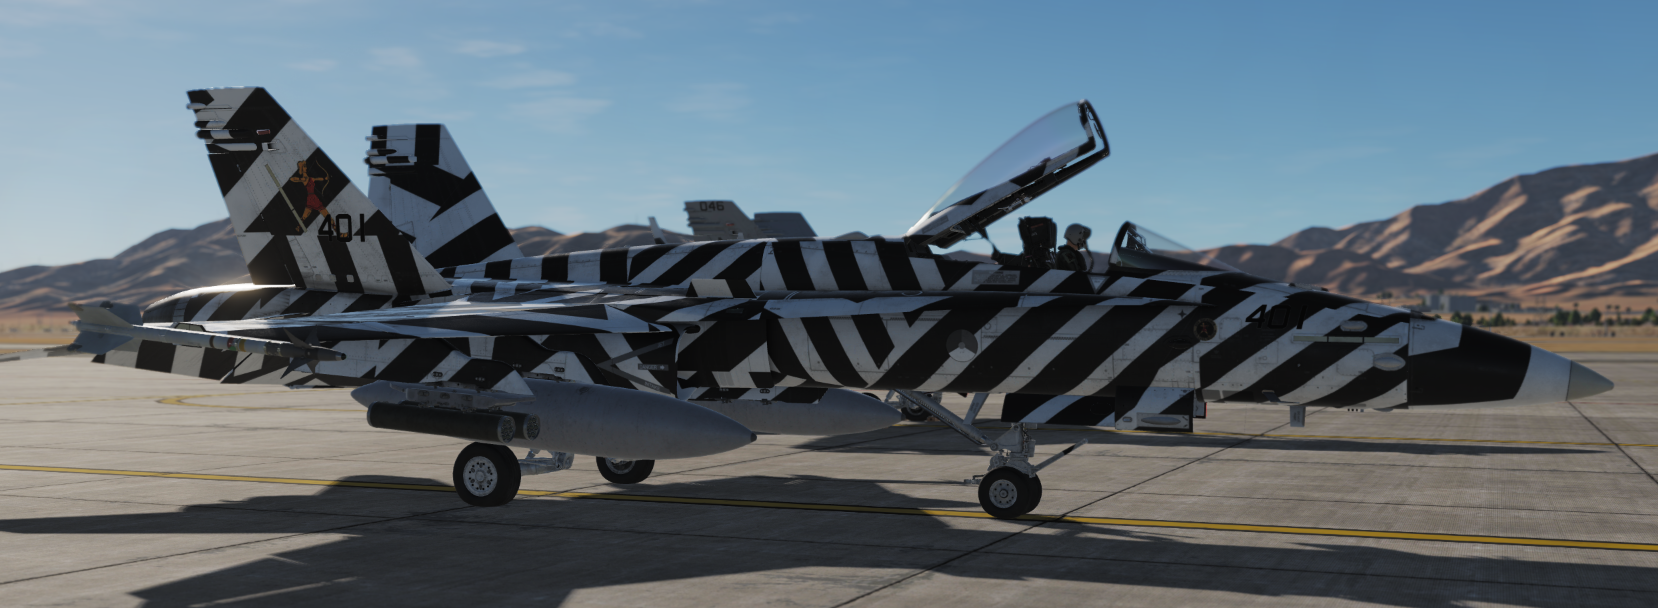 FA-18C Hornet RNLAF Dazzle scheme livery (fictional 323squadron)